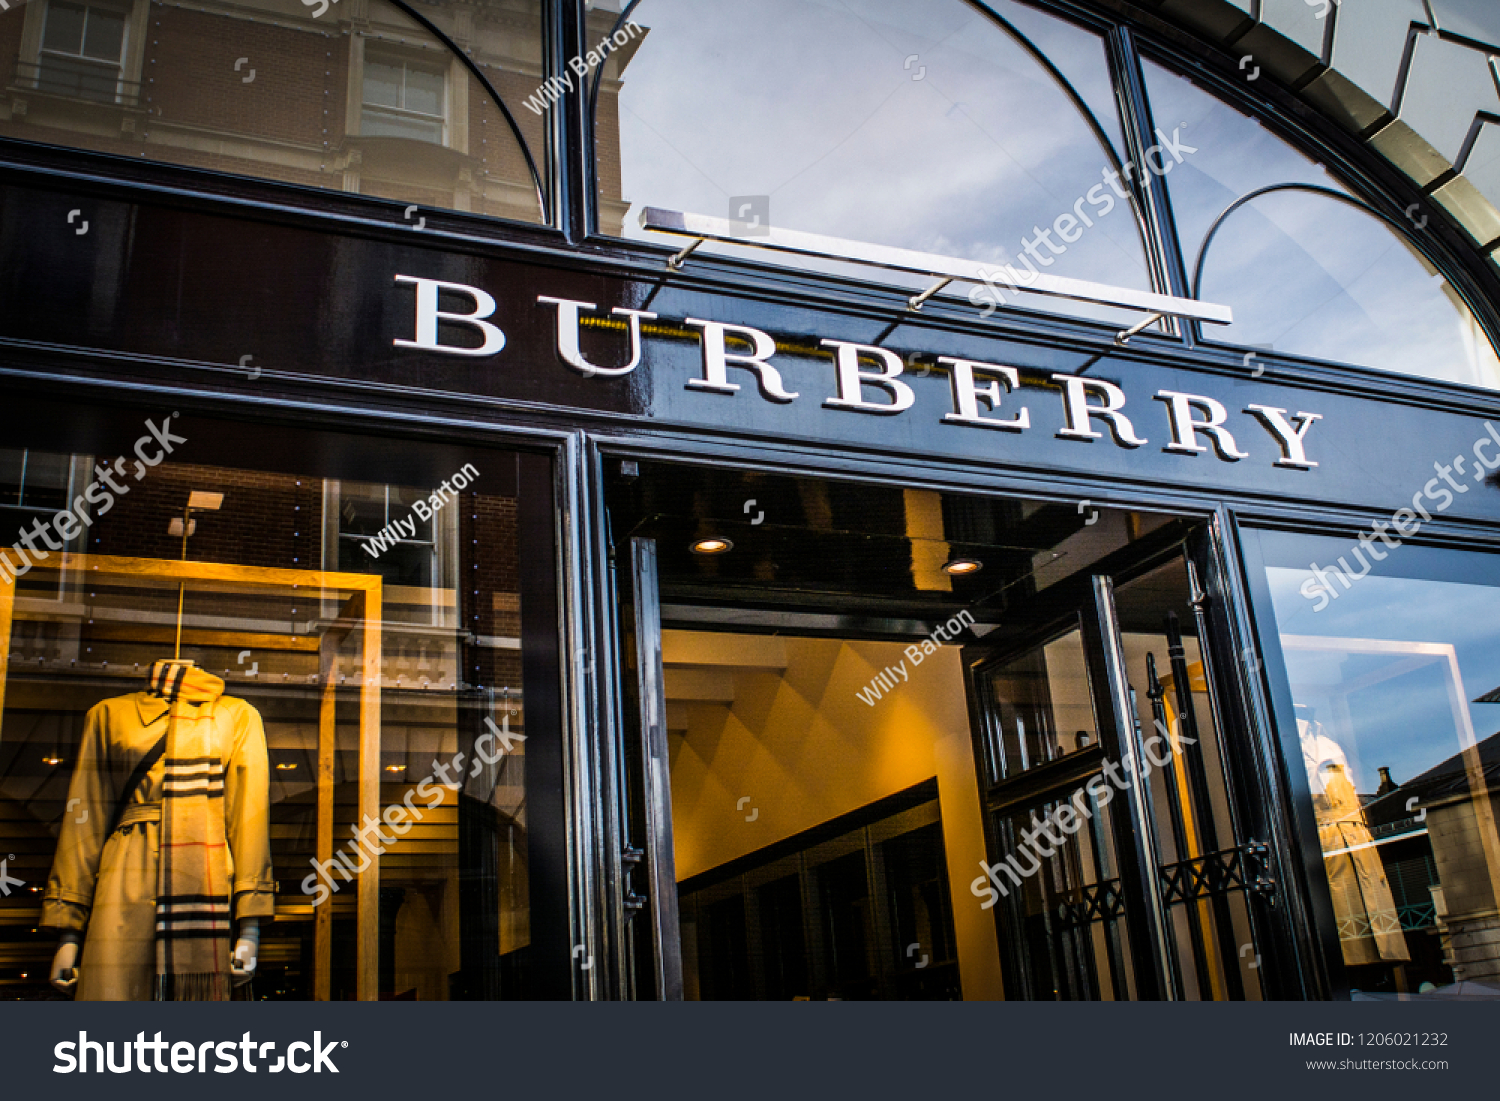 shop burberry